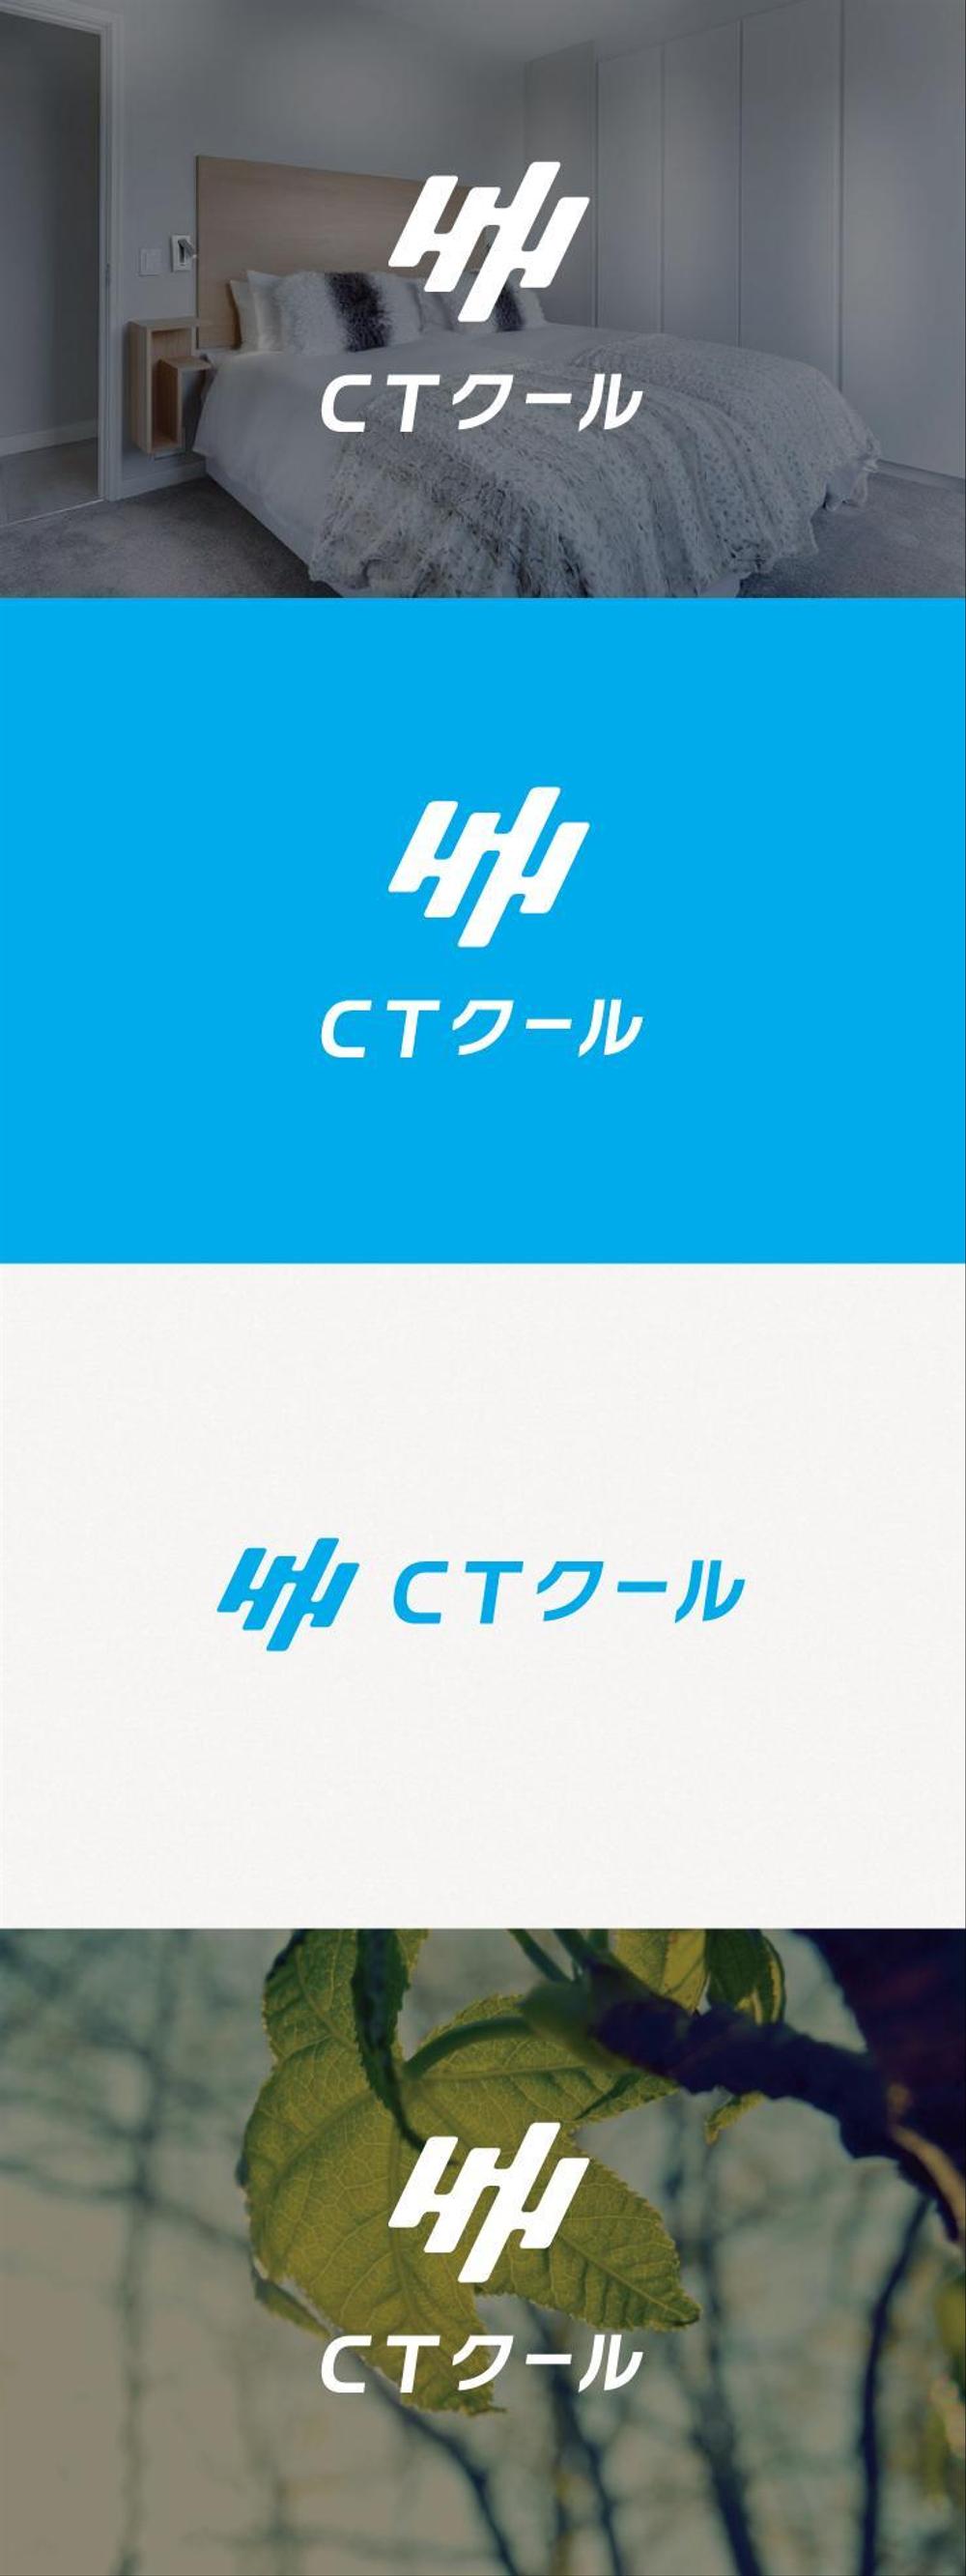 接触冷感生地を使用したインテリア「CTクール」シリーズのブランドロゴ